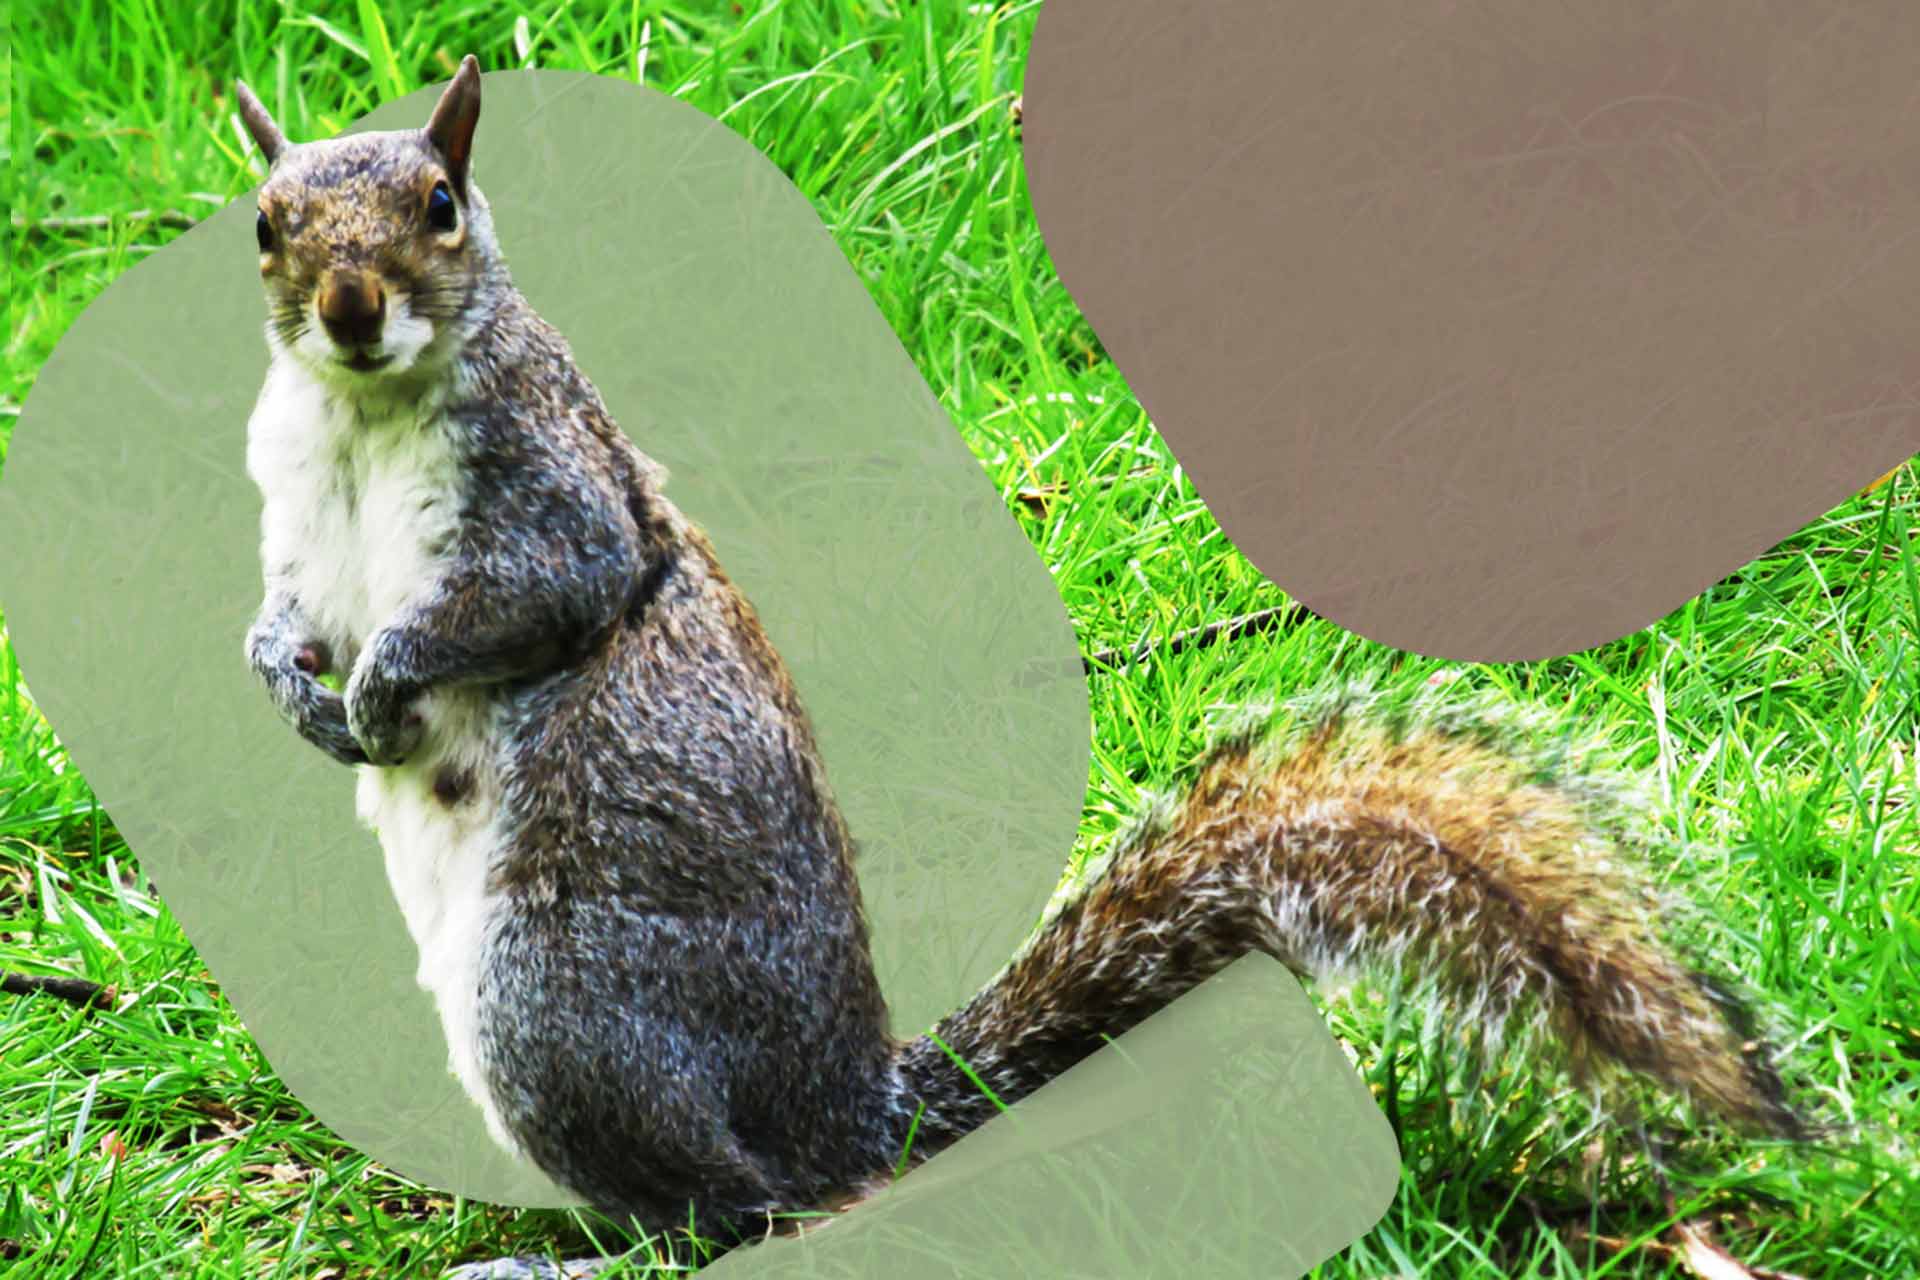 squirrel invasive species impacting biodiversity